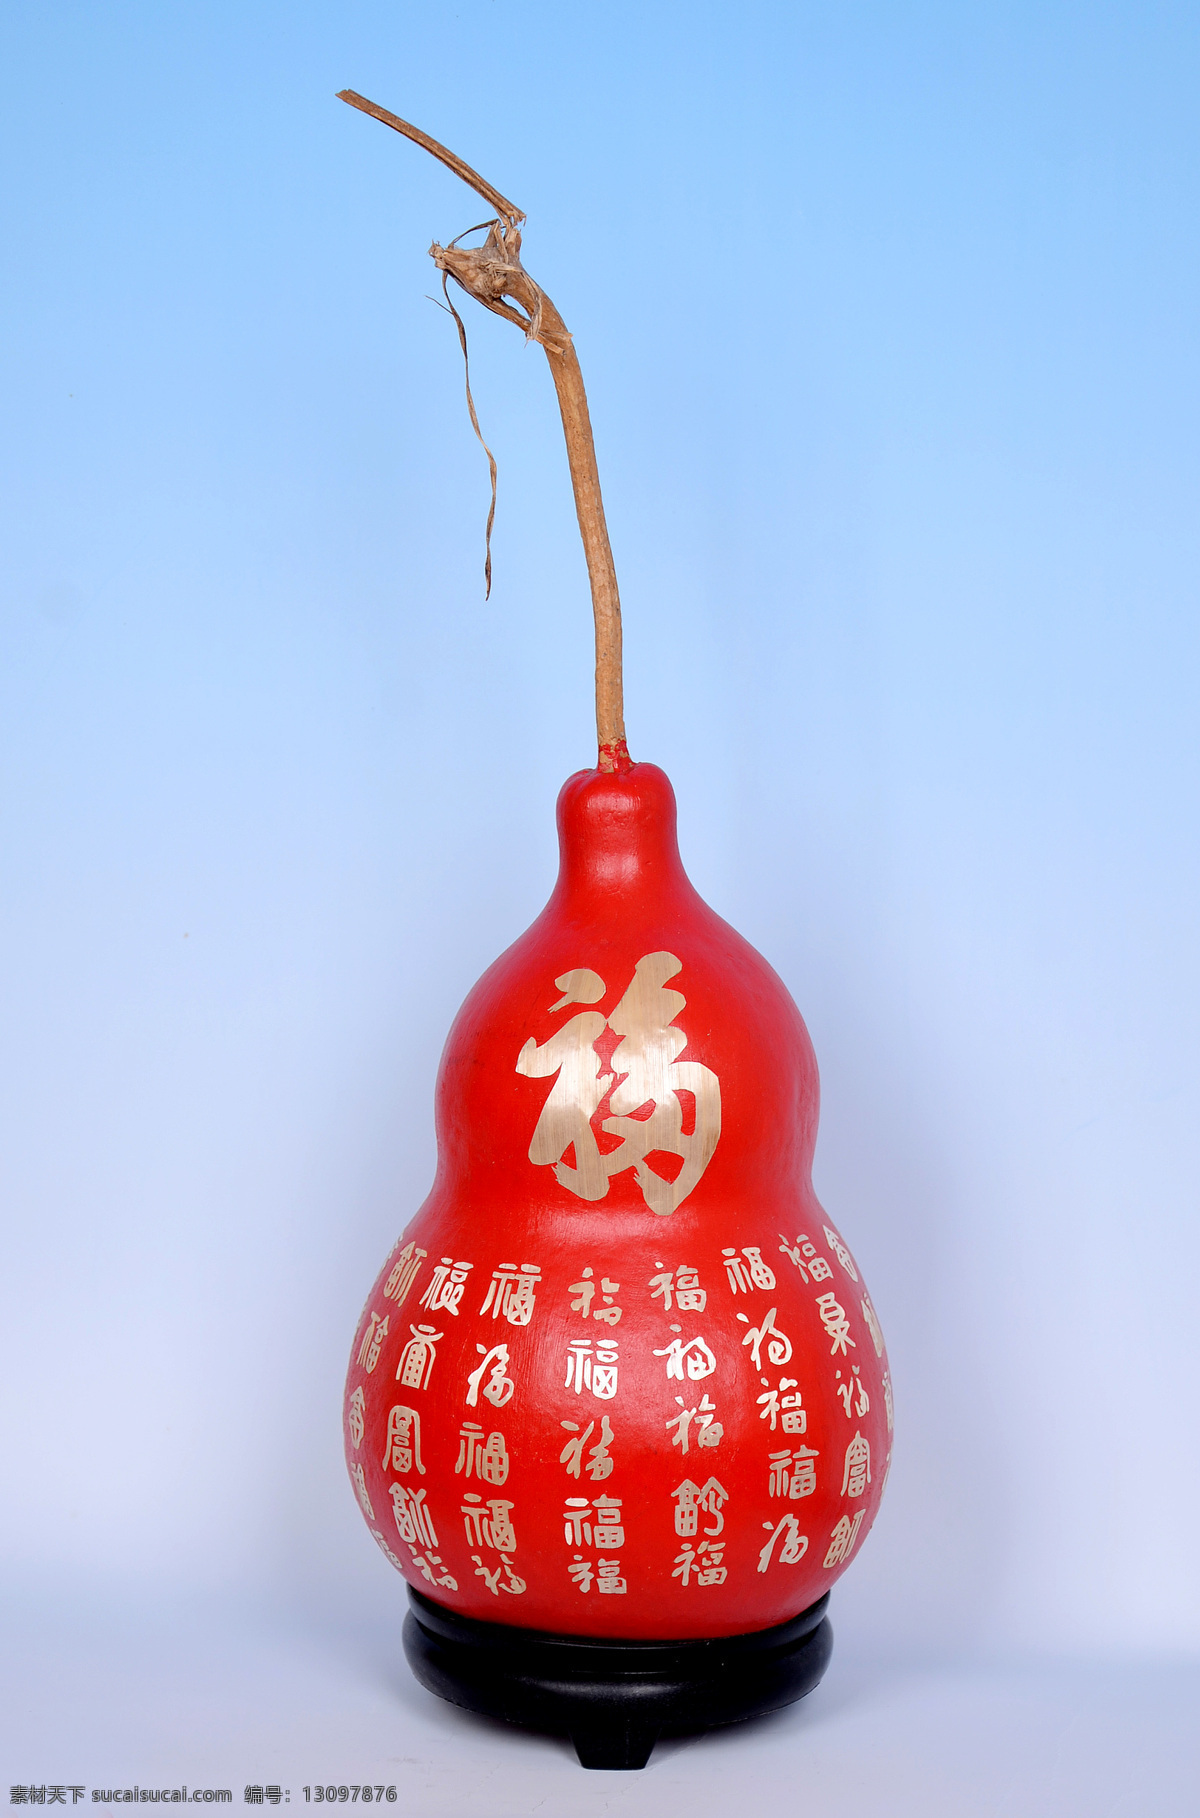 麦 雕葫芦 葫芦百福 葫芦雕刻 麦秆画 百福葫芦 文化艺术 传统文化